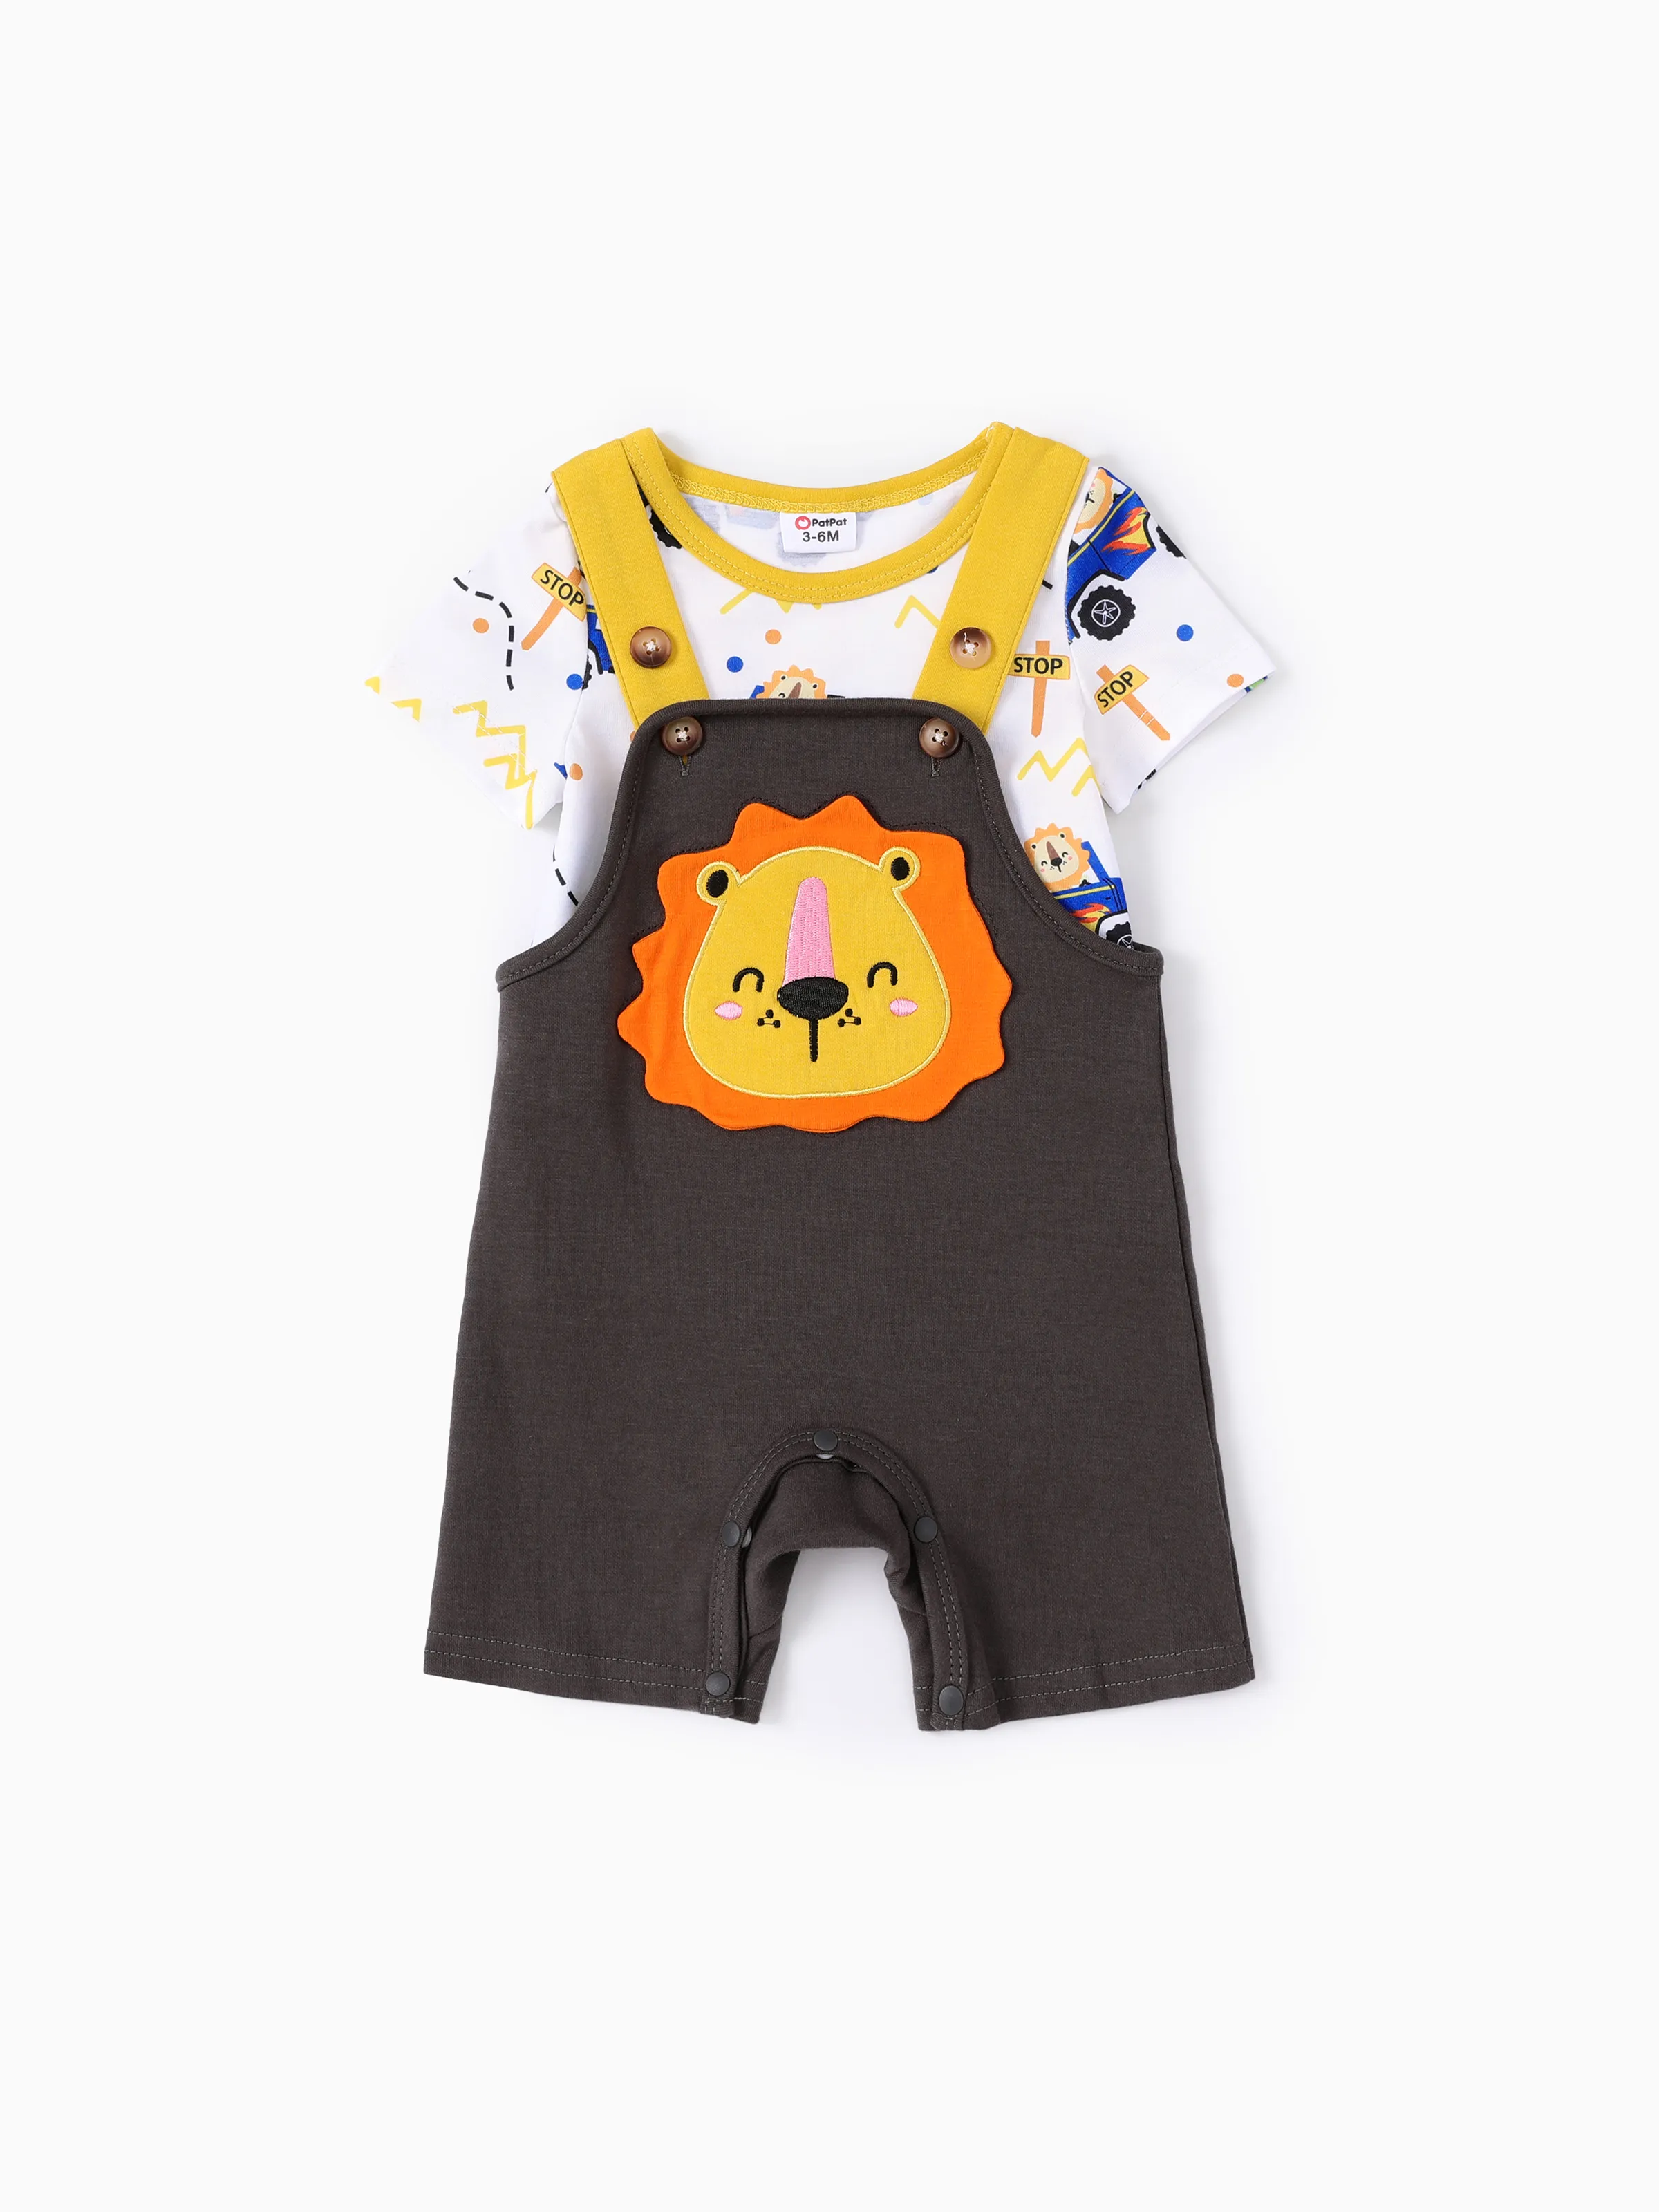 Baby Boy 2件獅子印花連體褲和獅子刺繡工作服套裝